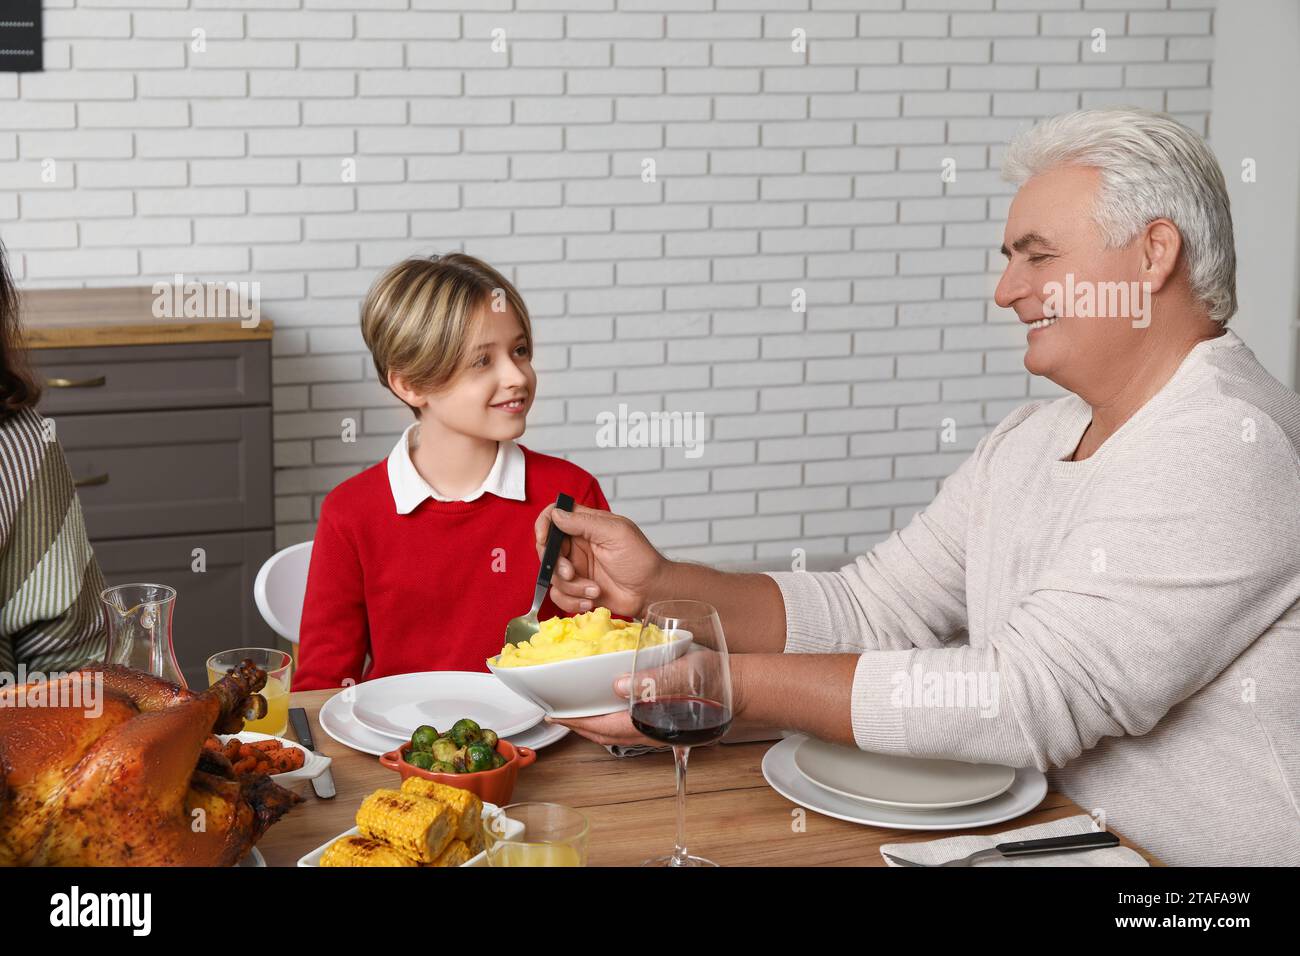 Un uomo maturo che mette da mangiare sul piatto del suo piccolo nipote al tavolo delle feste per il giorno del Ringraziamento Foto Stock